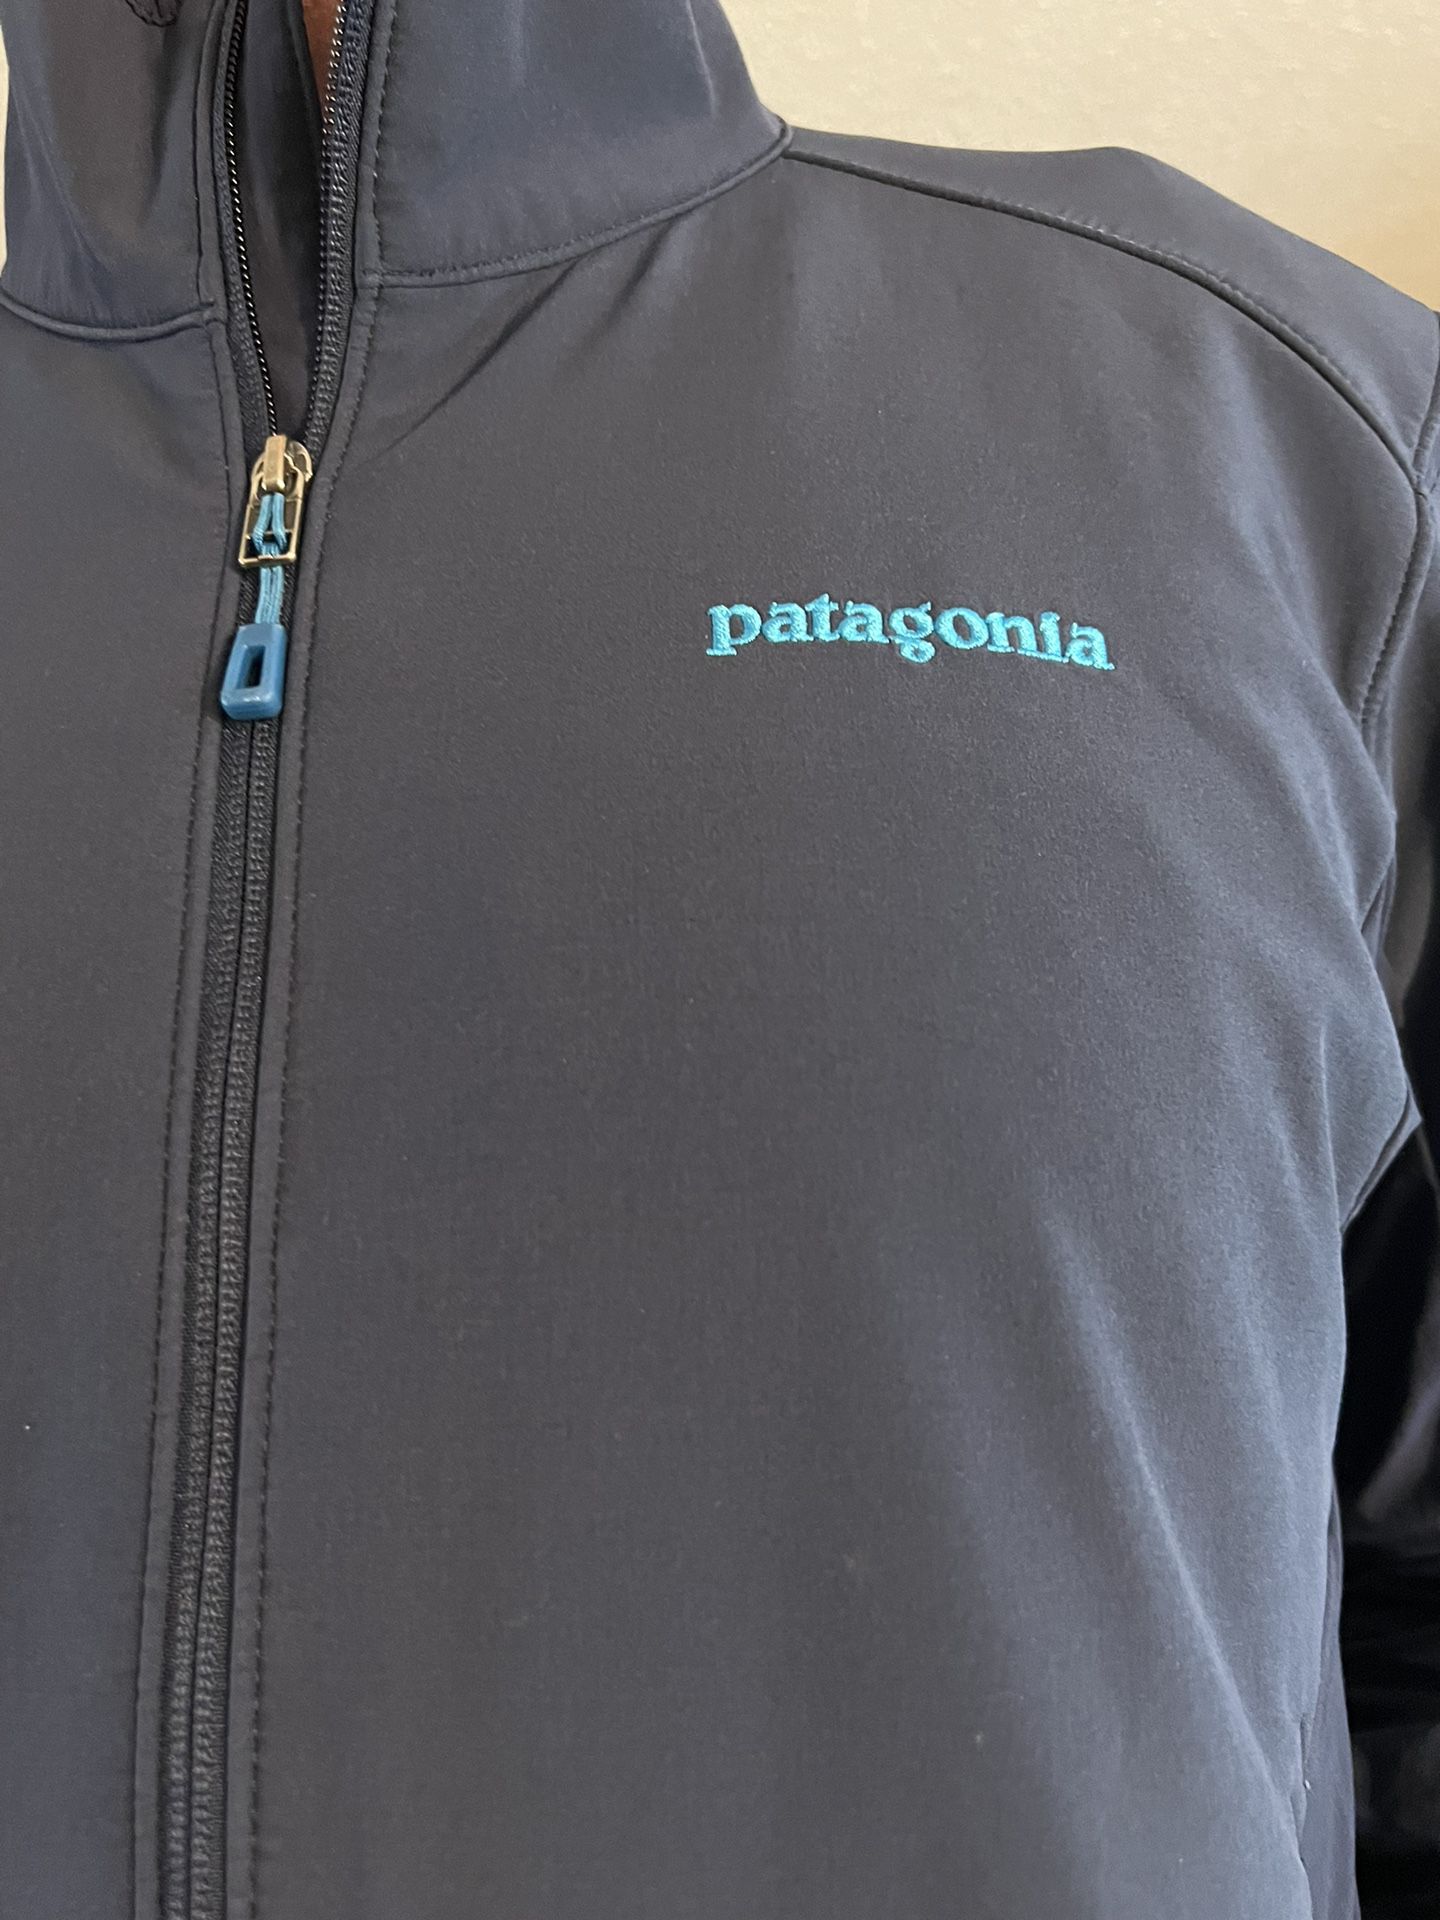 Patagonia Men’s Adze Jacket - Sz Large 